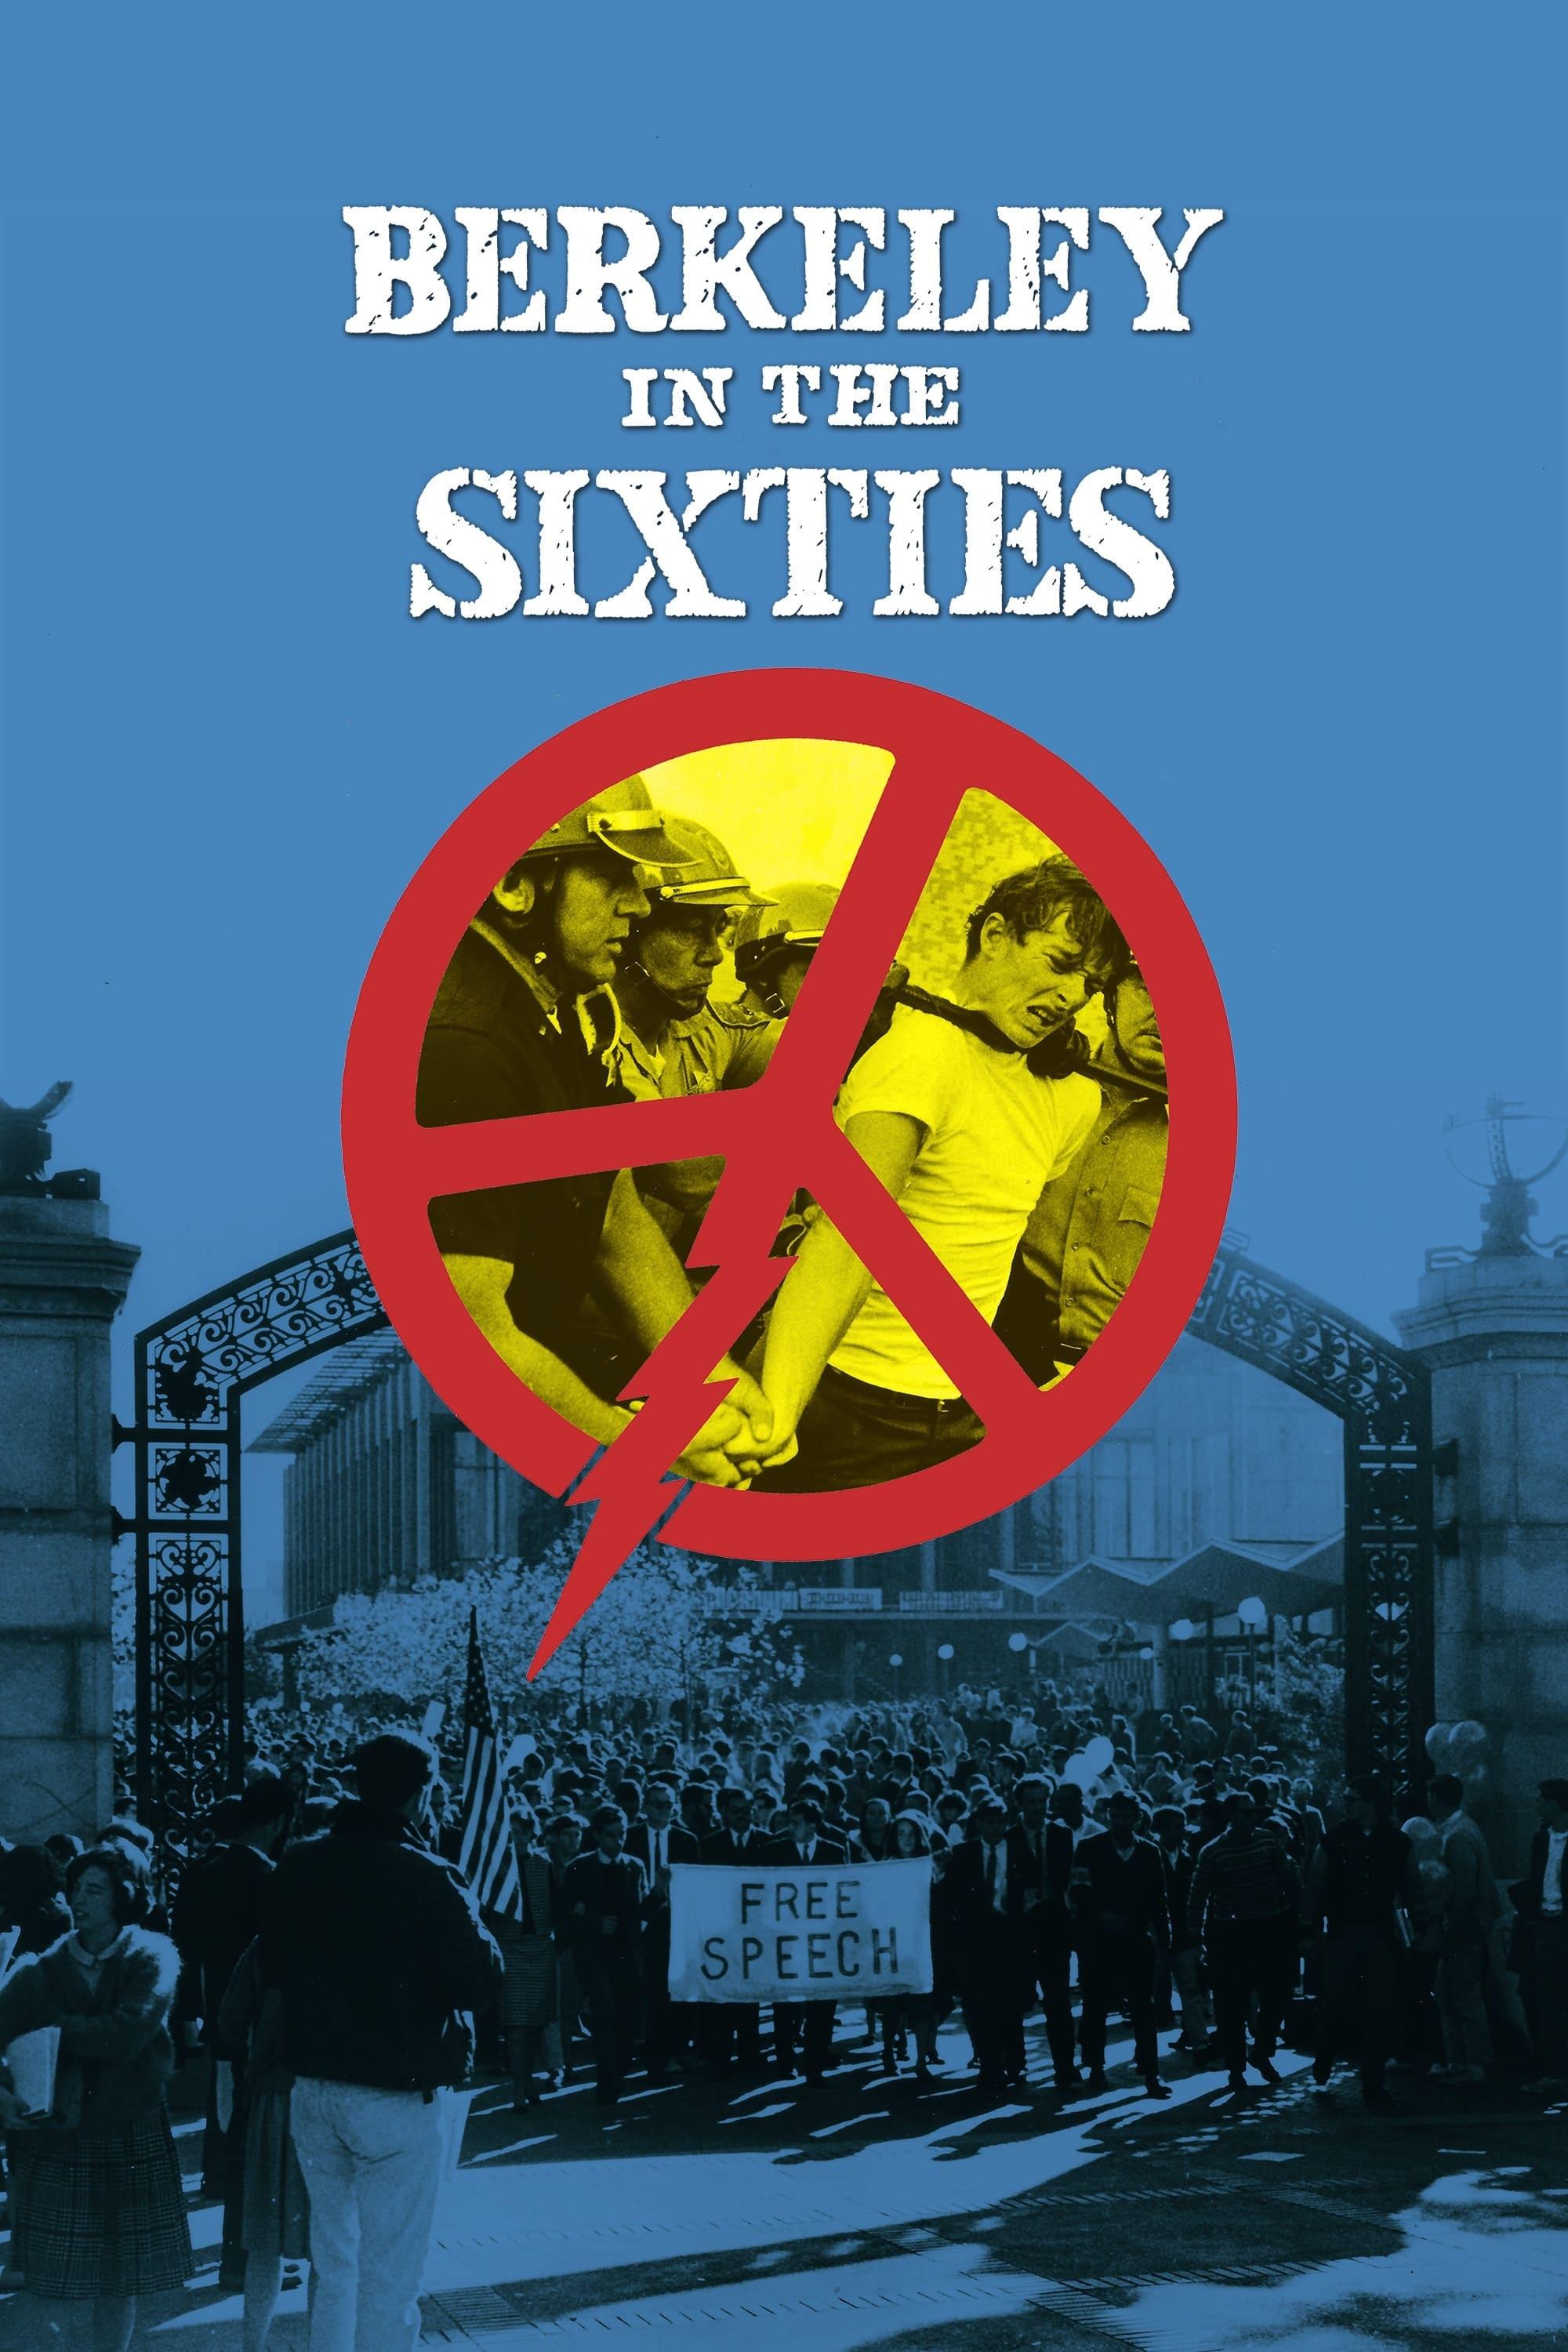 Berkeley in the Sixties poster